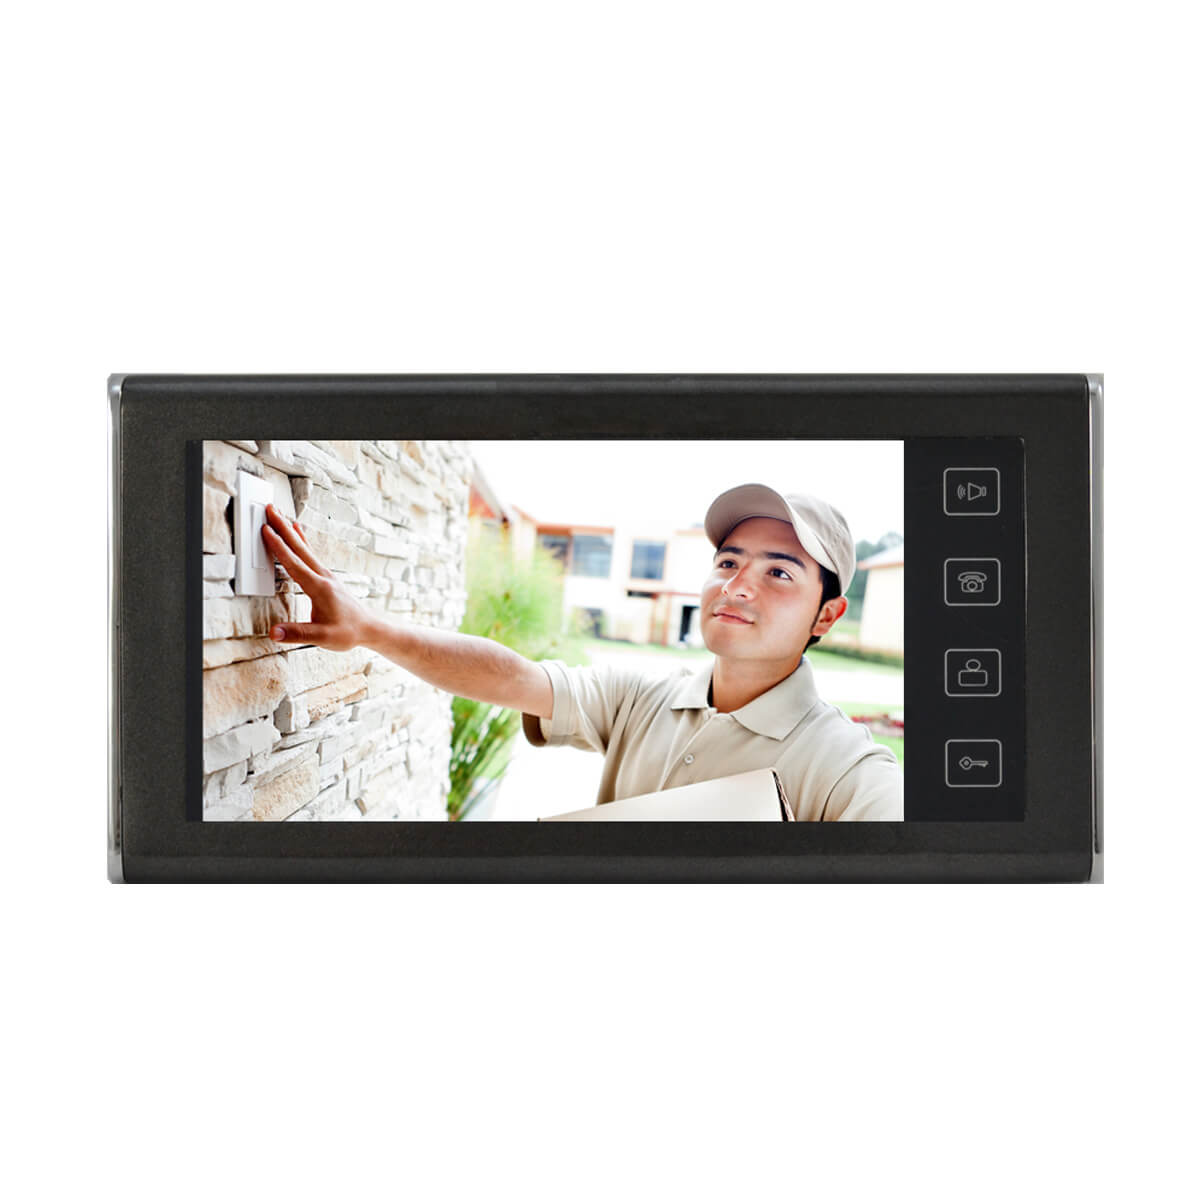 Video portero con pantalla LCD de 7 y camara con resolucion de 420TVL